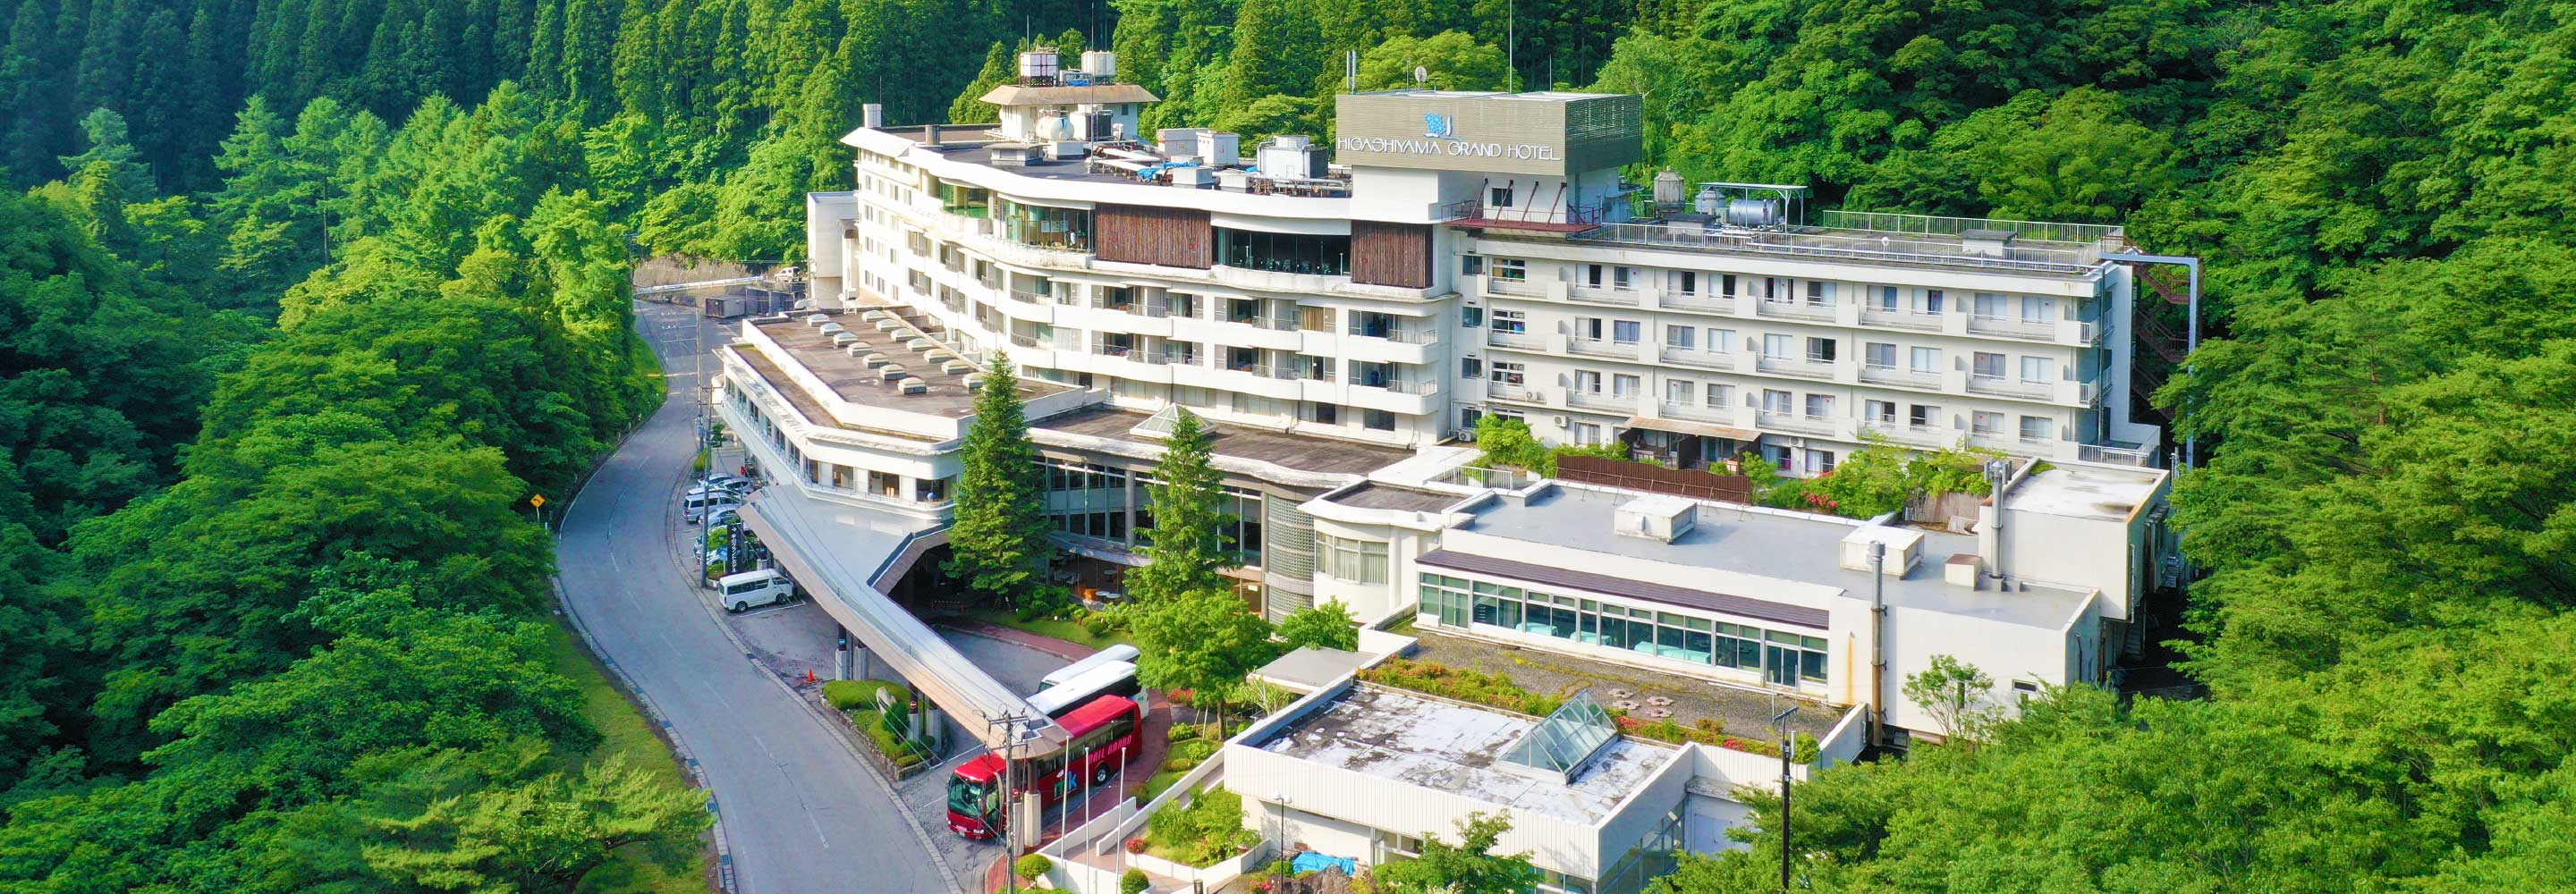 東山グランドホテル 最安値宣言 公式 大江戸温泉物語グループ